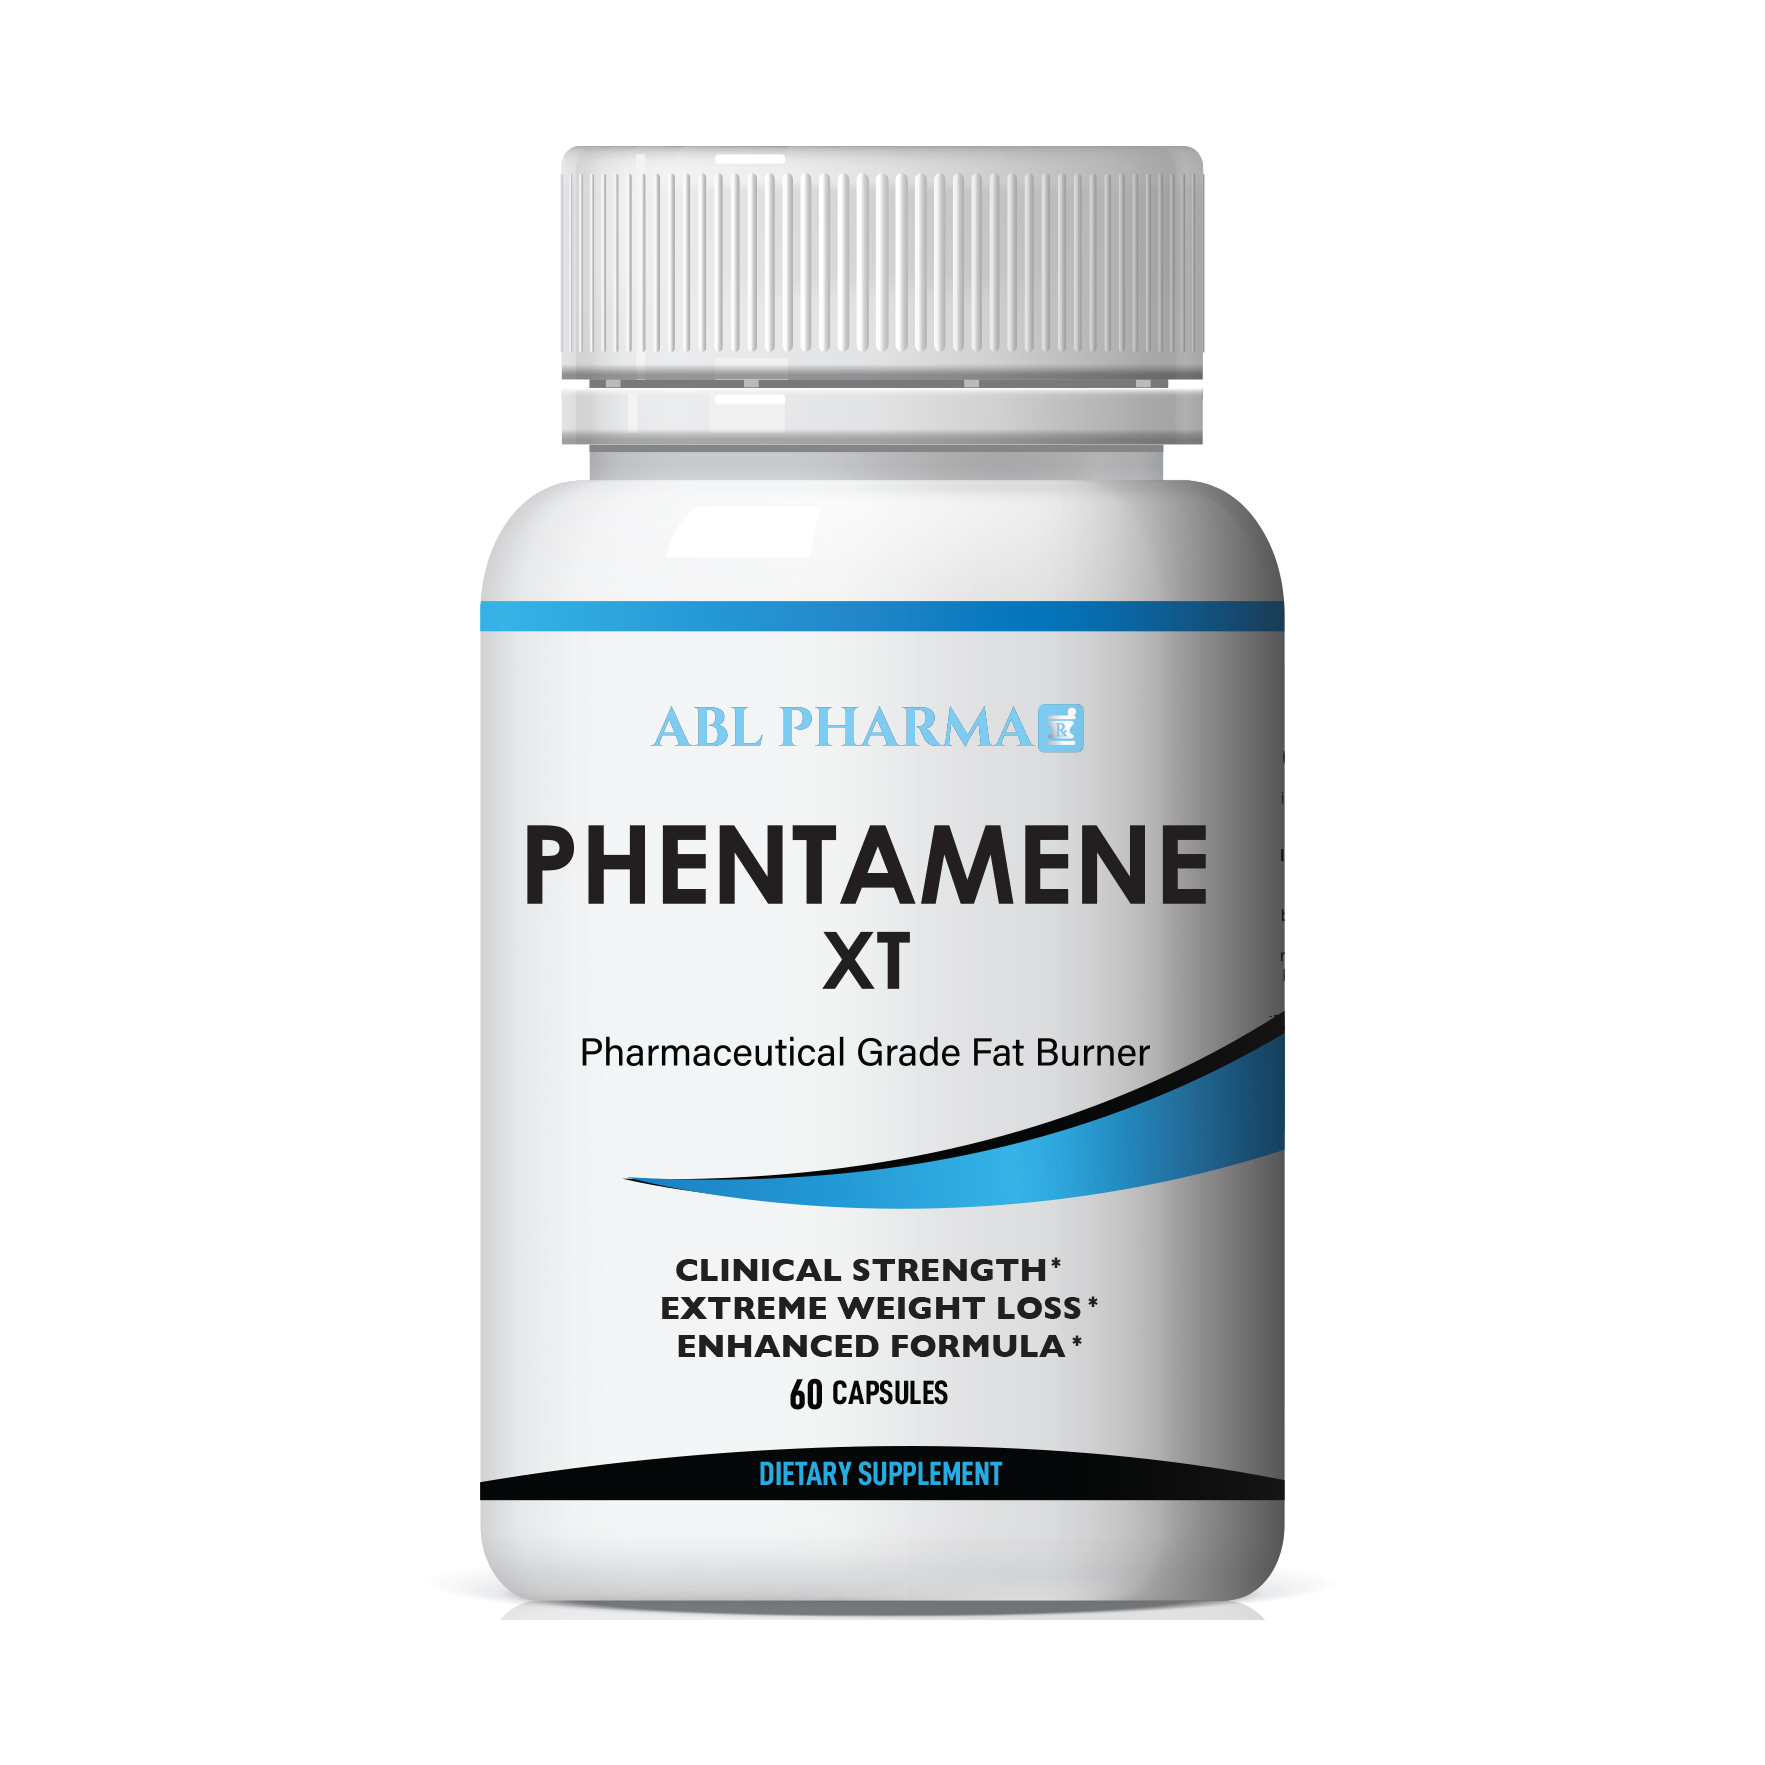 Phentamene XT - Pharmaceutical Grade Fat Burner